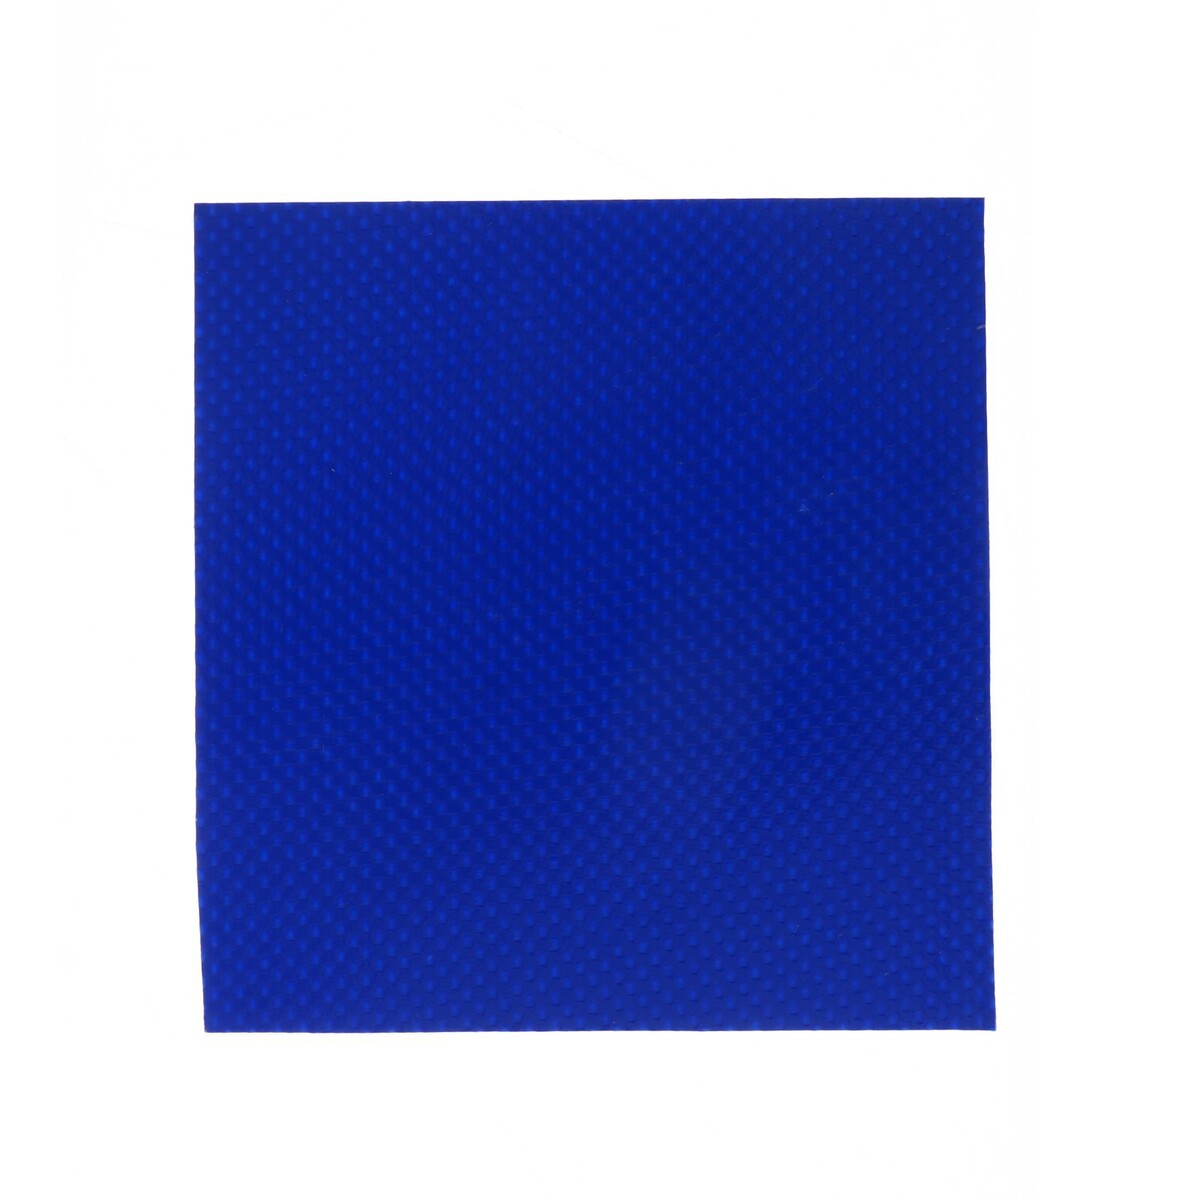 Ремкомплект, 4 заплатки синего цвета YUGANA 010293663 - фото 4